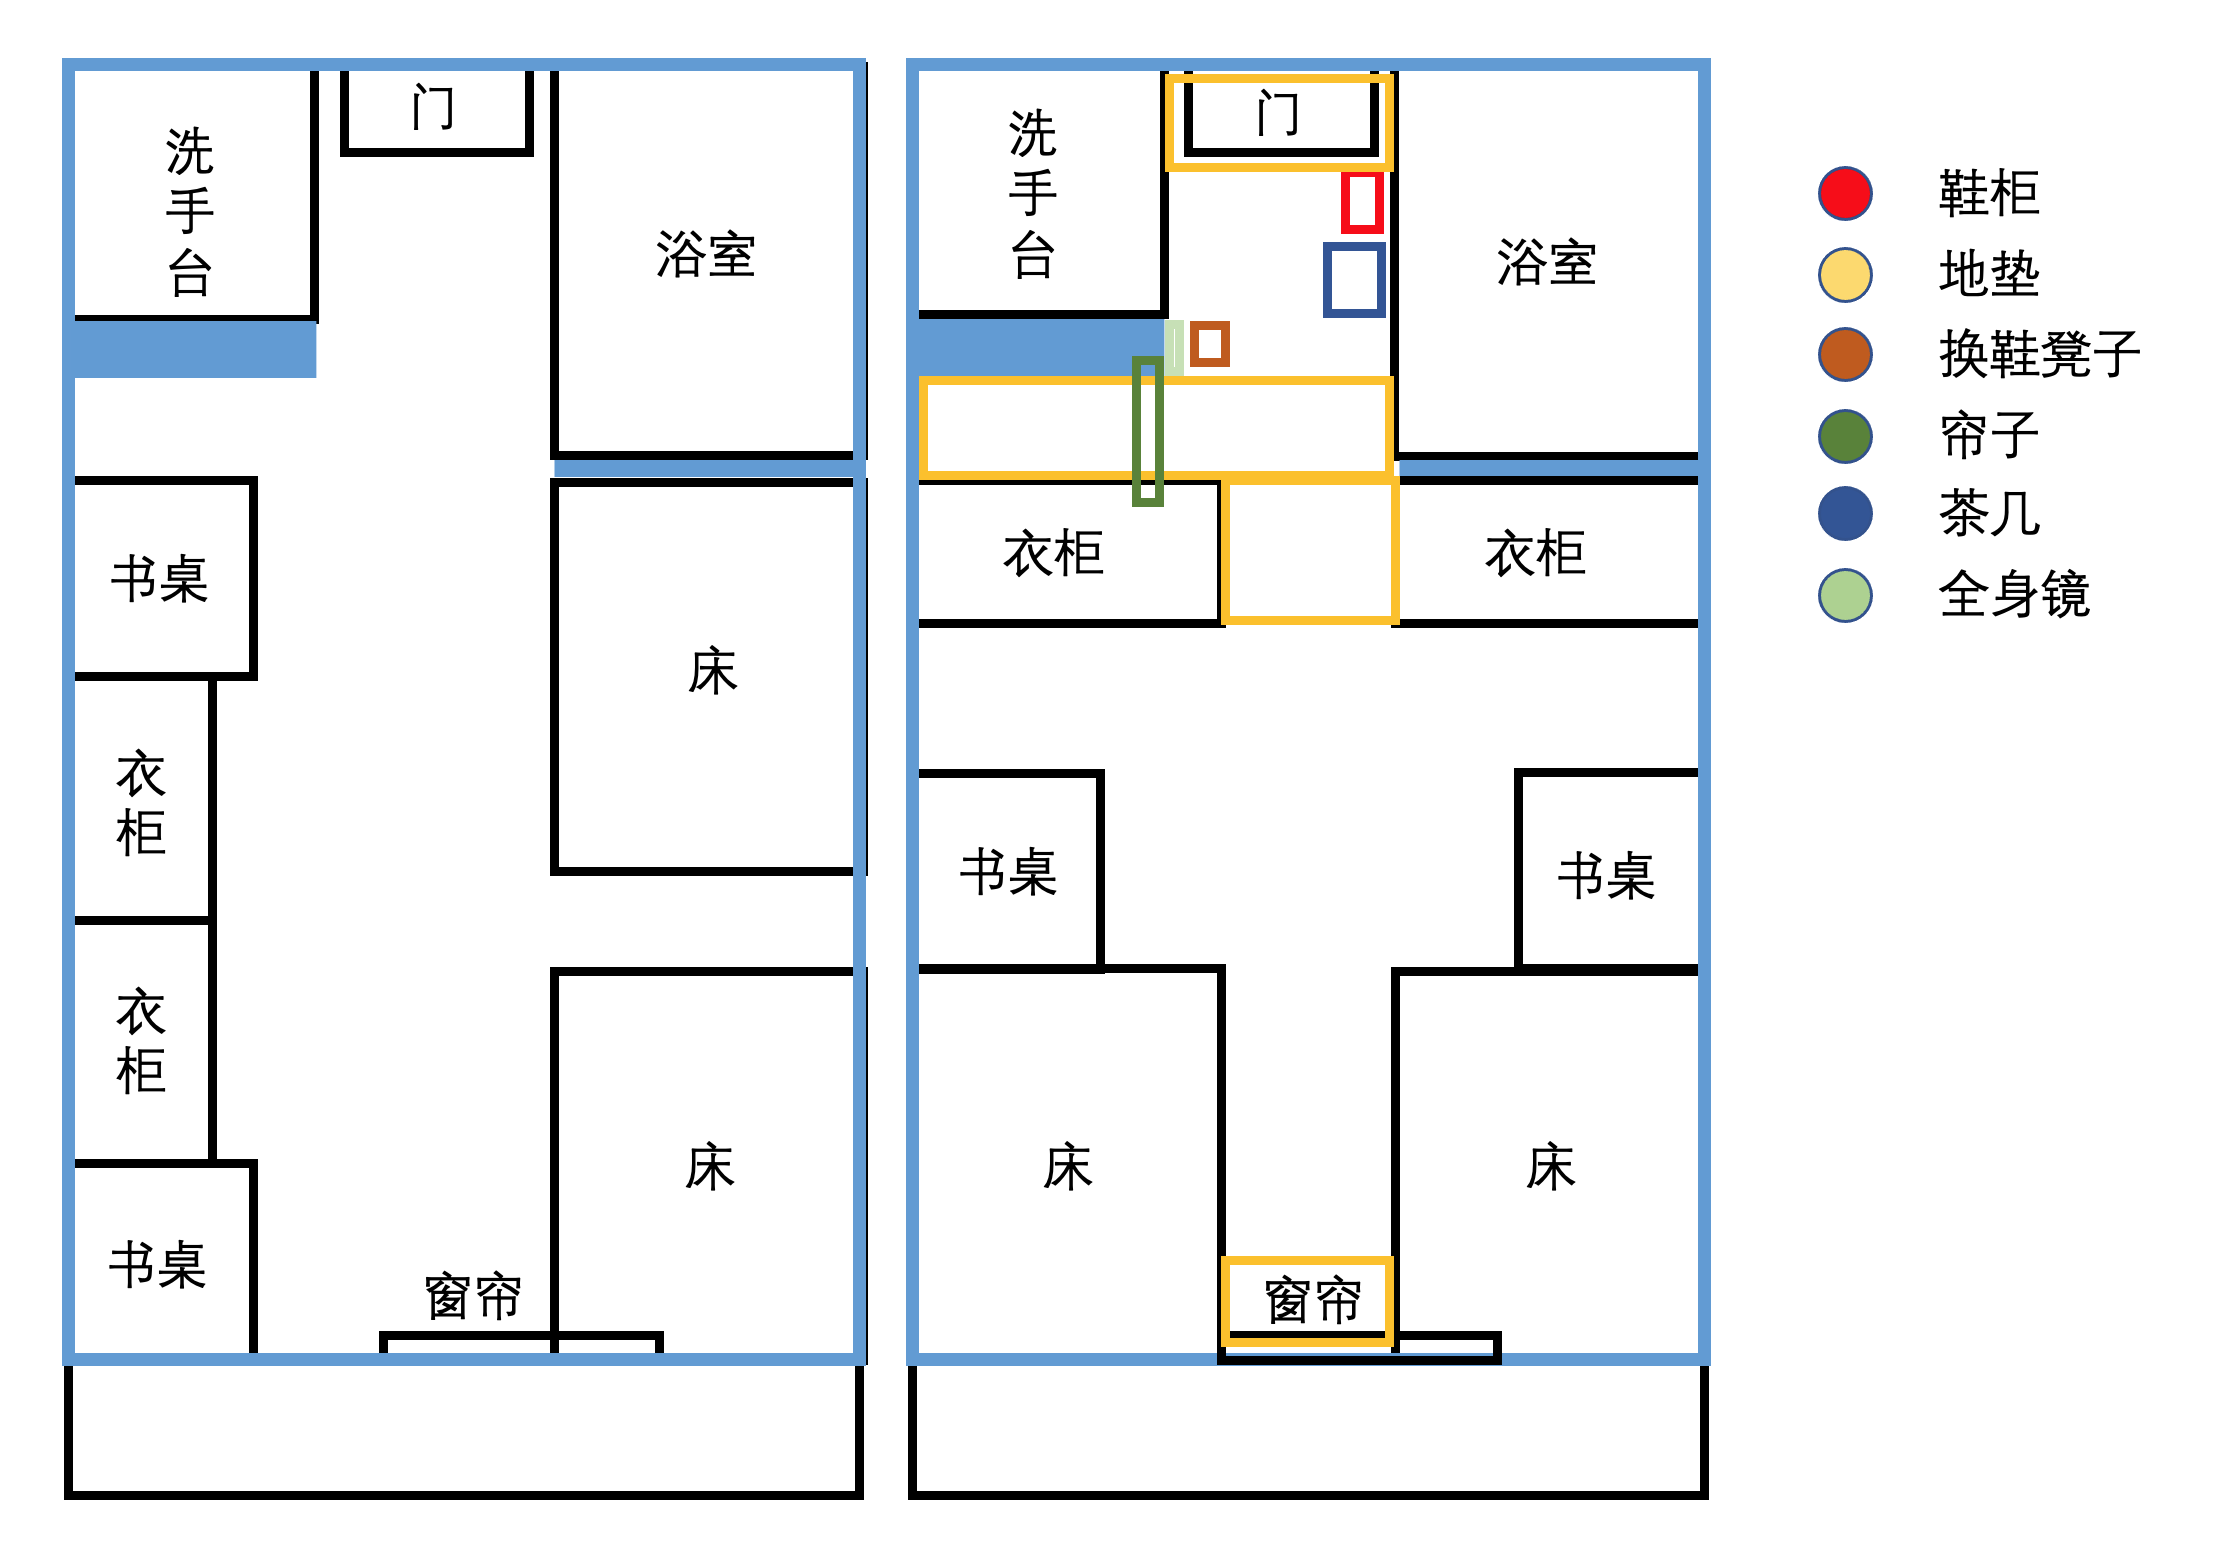 南京大学仙林校区15幢宿舍改造经历